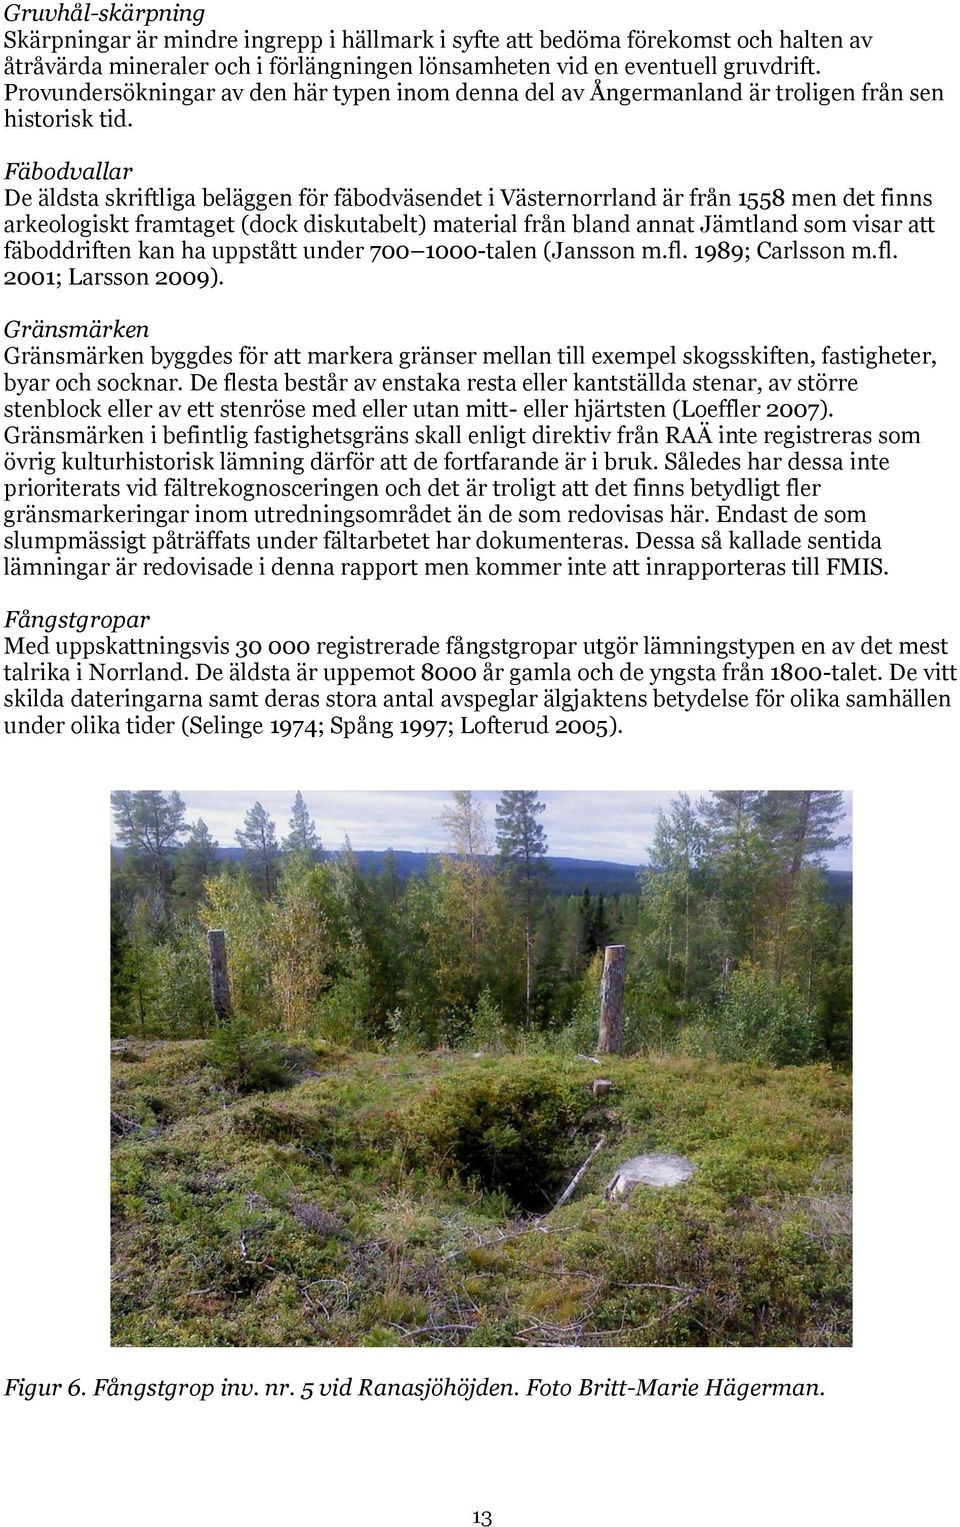 Fäbodvallar De äldsta skriftliga beläggen för fäbodväsendet i Västernorrland är från 1558 men det finns arkeologiskt framtaget (dock diskutabelt) material från bland annat Jämtland som visar att